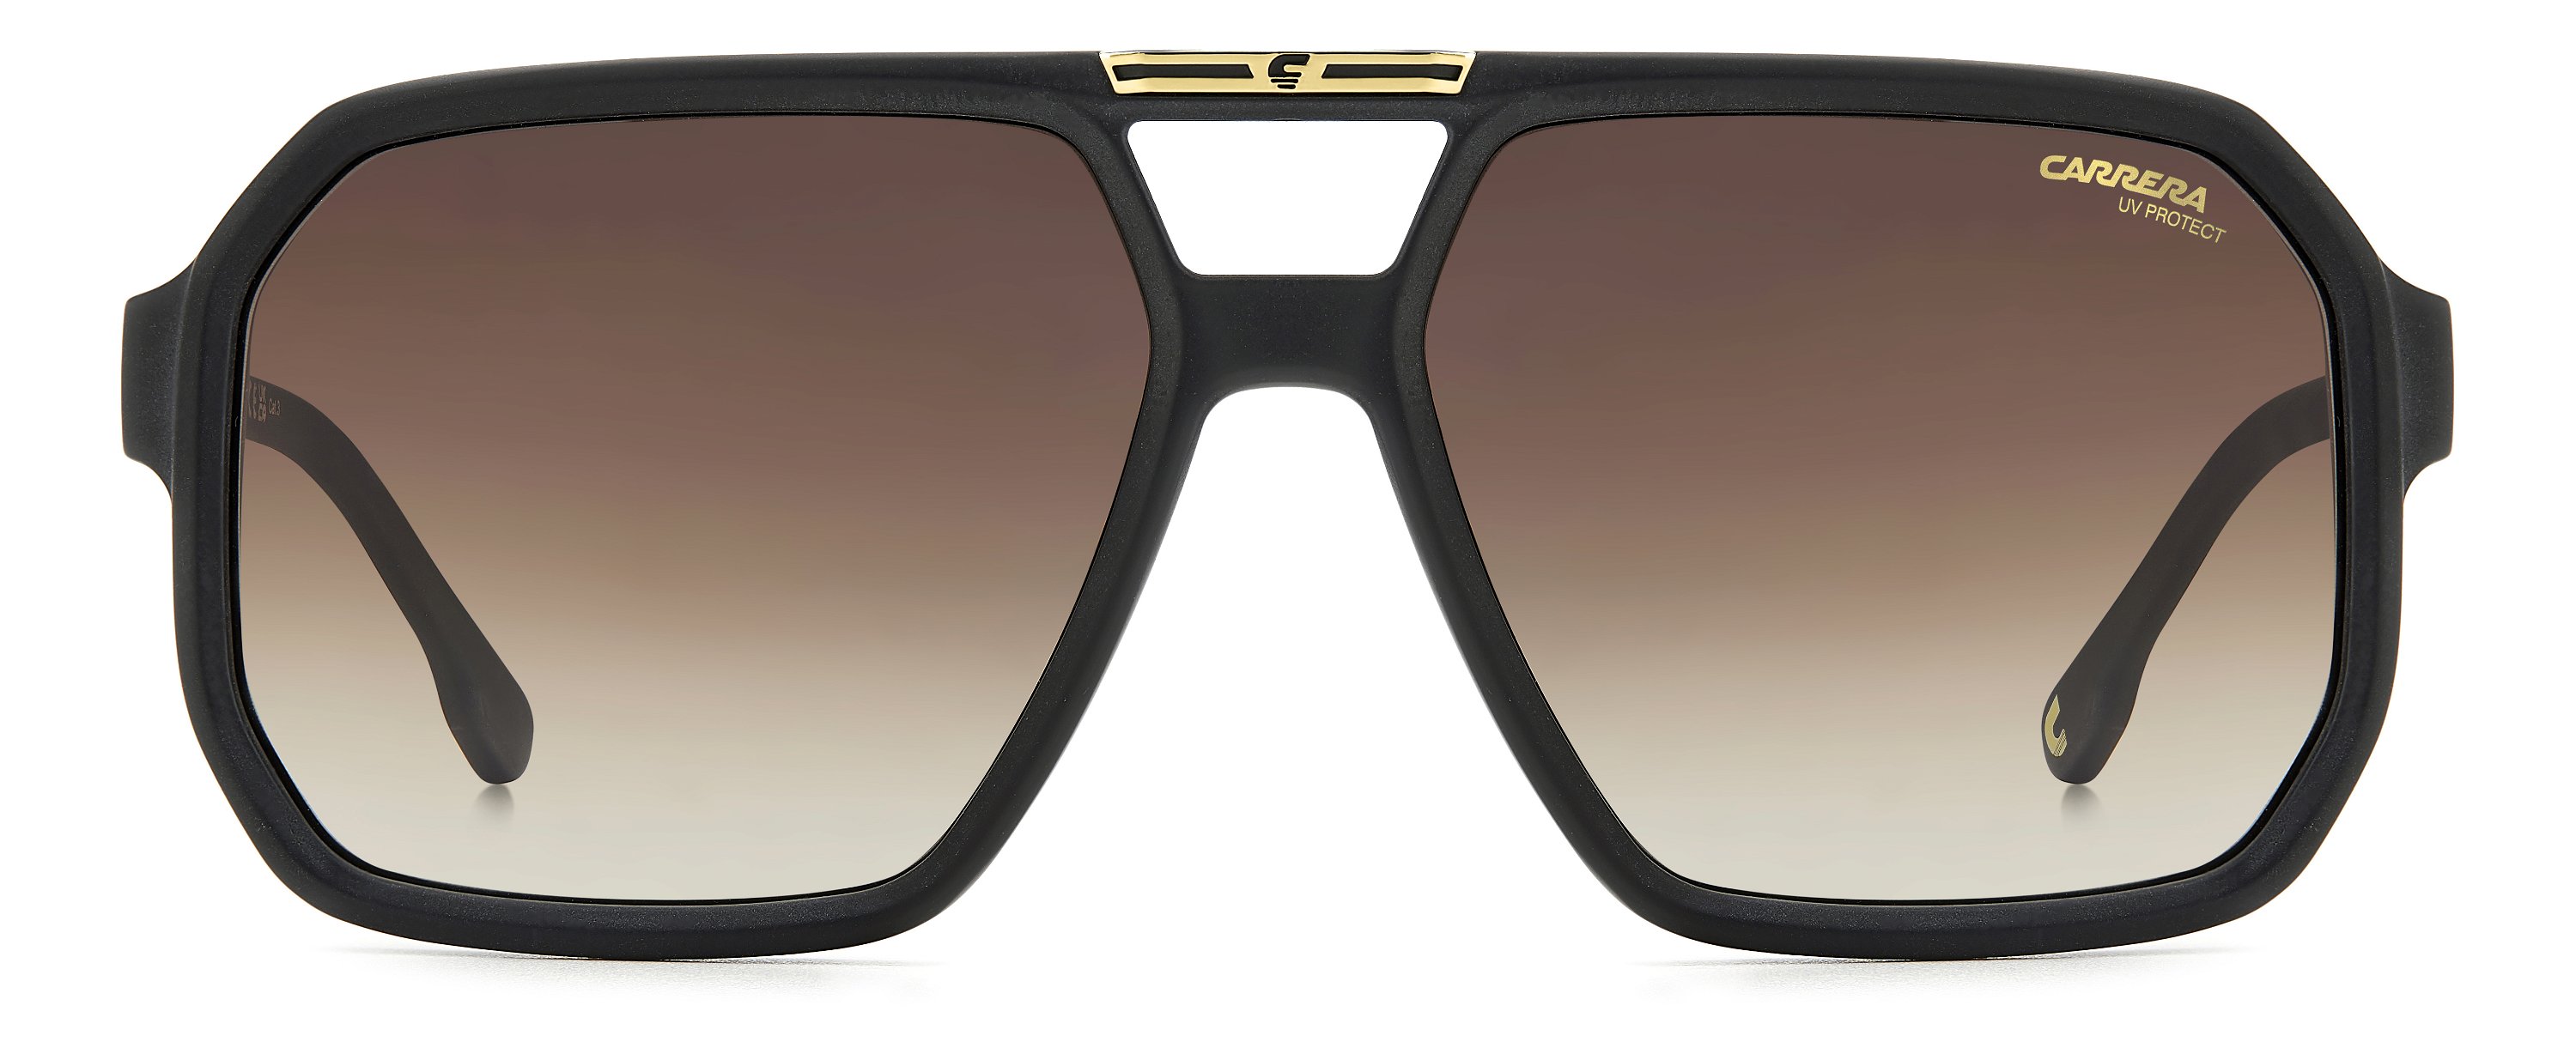 Das Bild zeigt die Sonnenbrille C01/S 003 von der Marke Carrera in  matt schwarz.